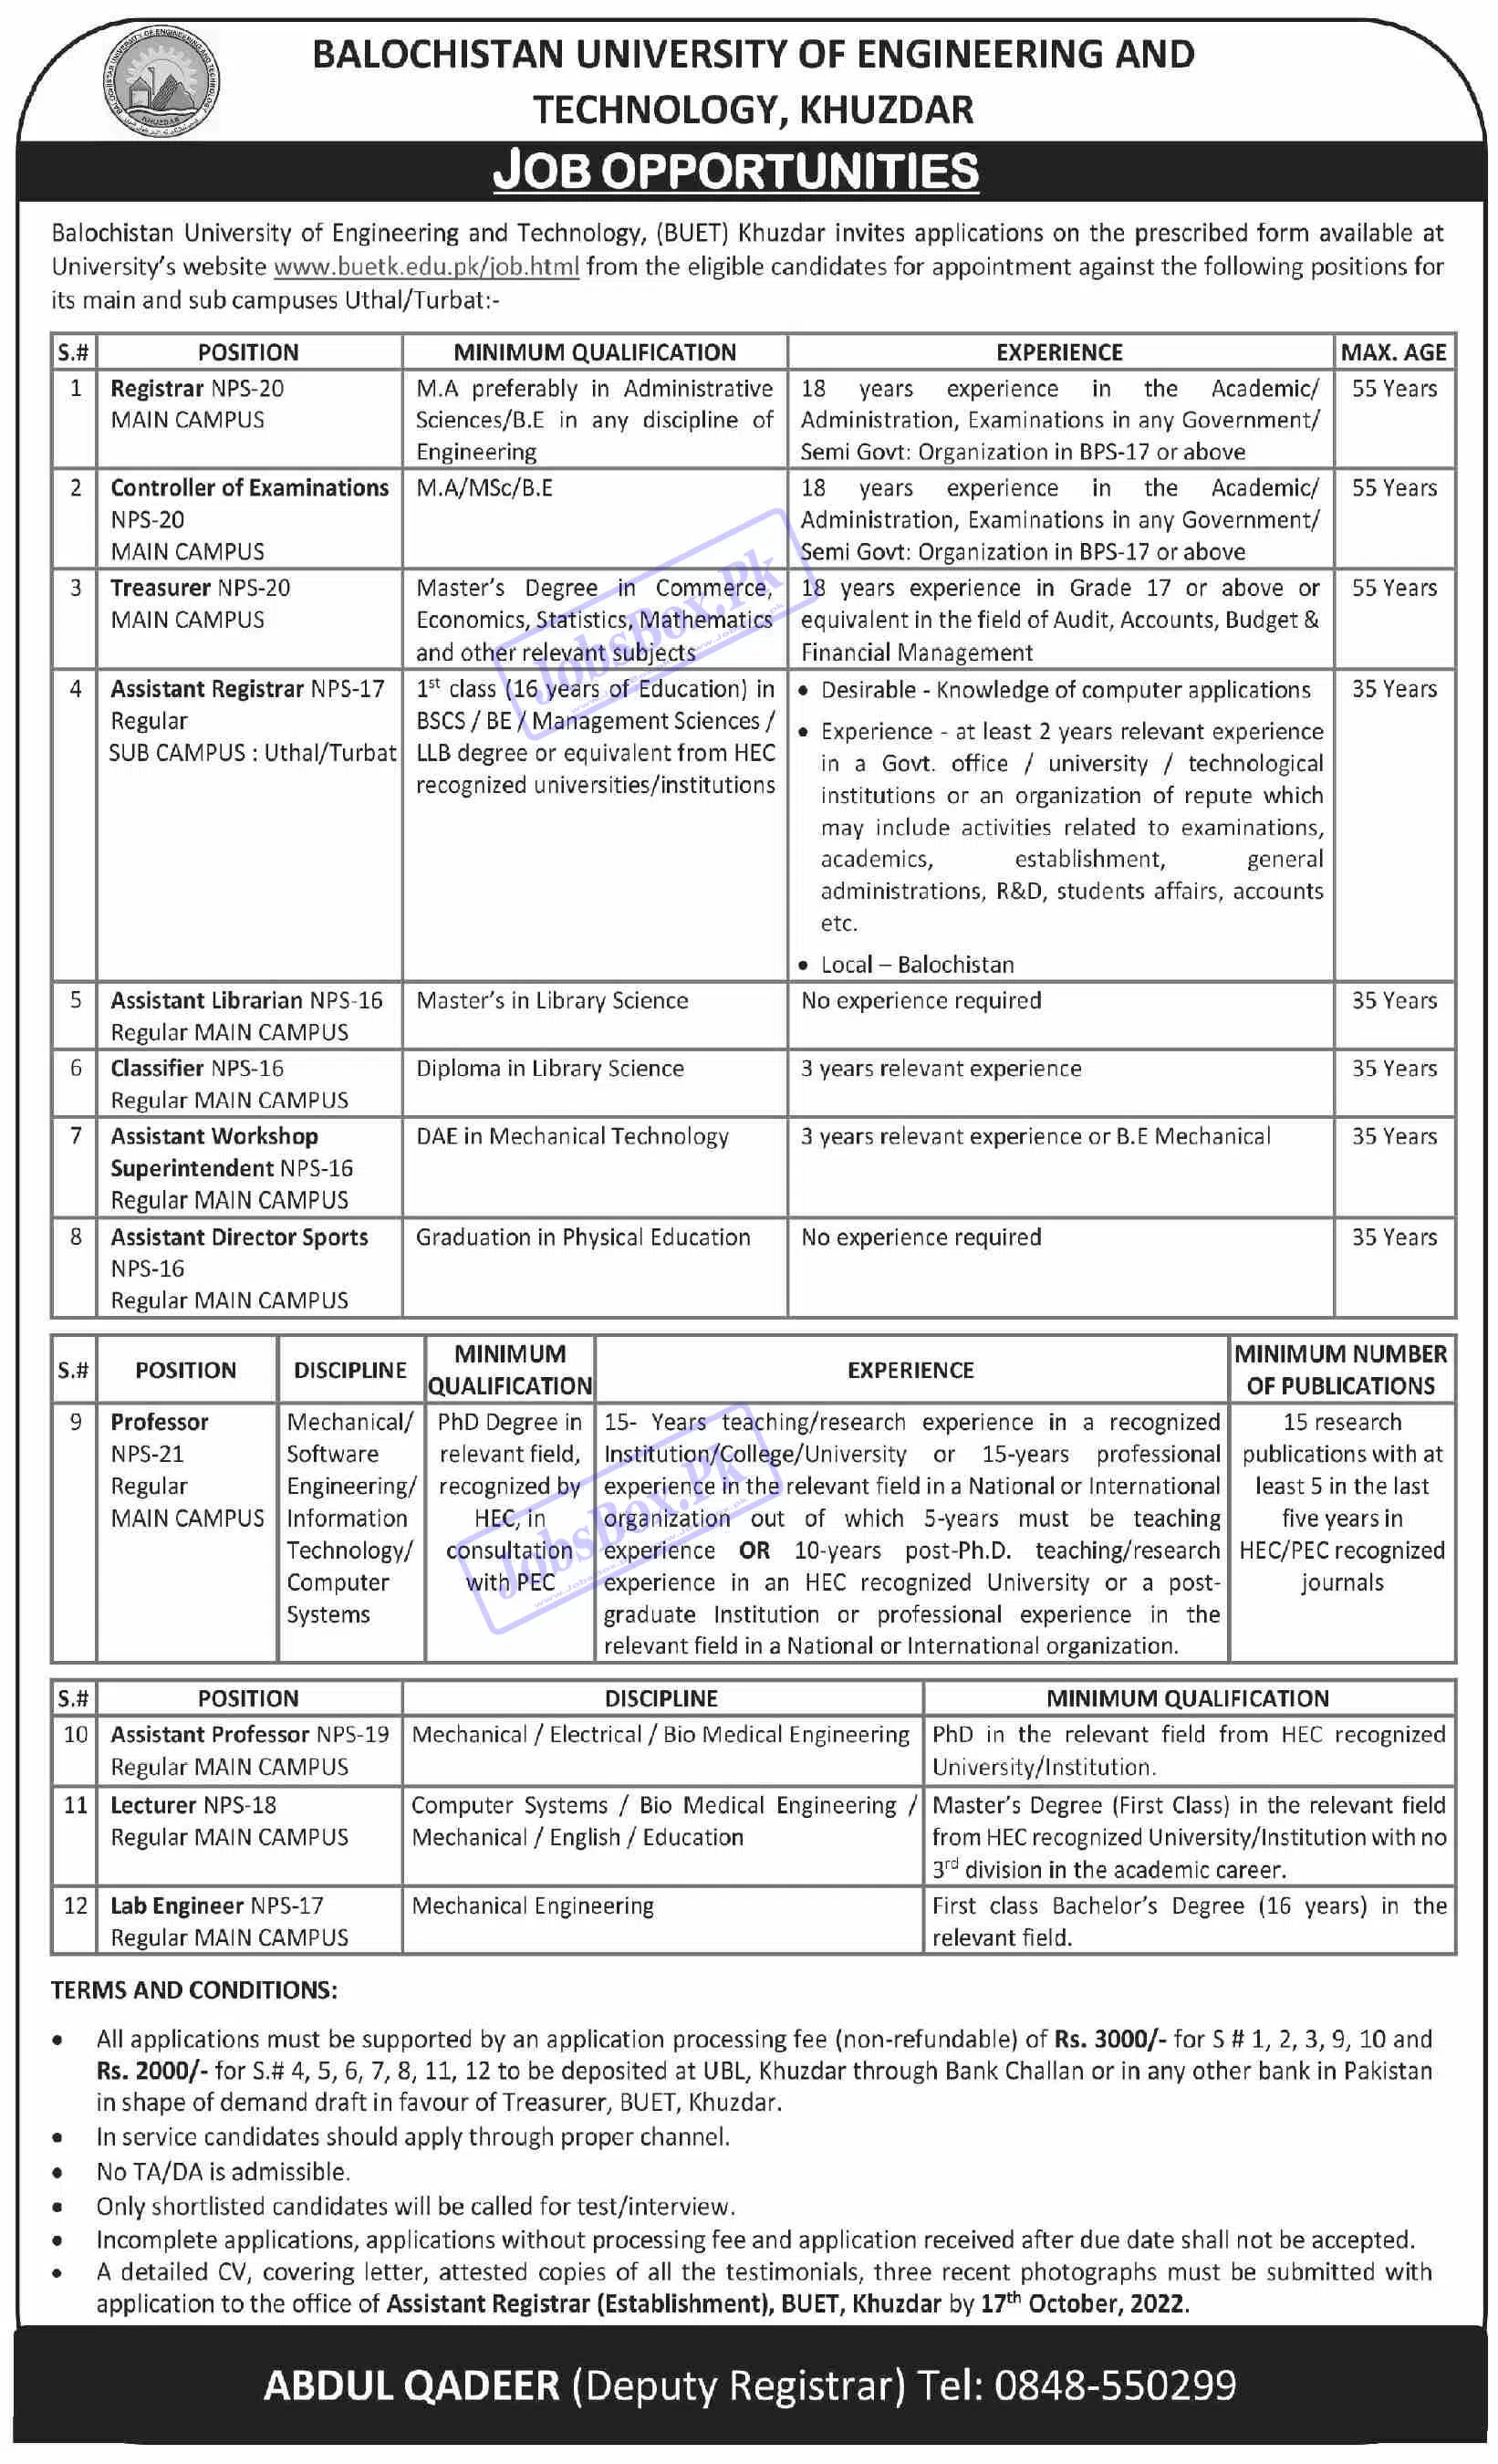 BUET Khuzdar Jobs September 2022 - Balochistan UET Khuzdar Careers